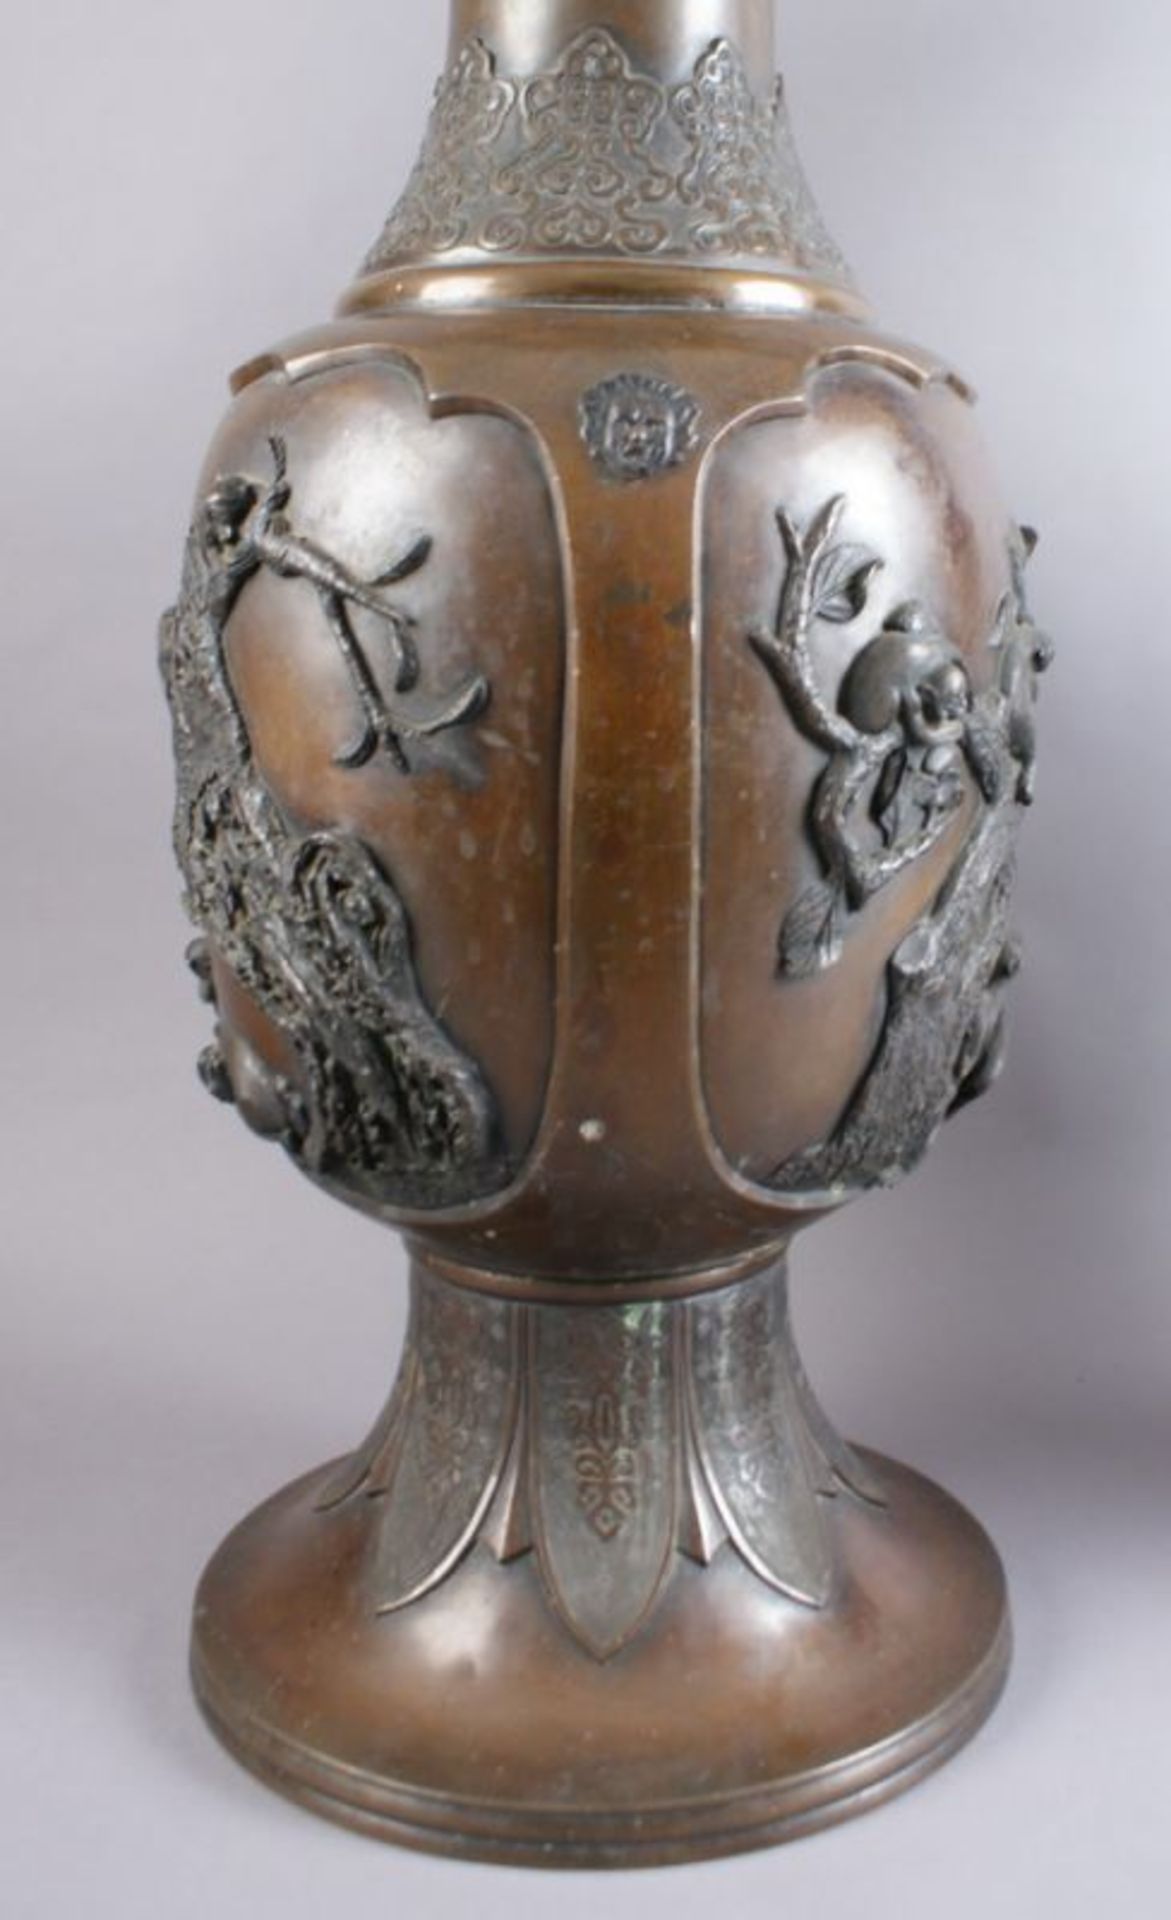 PAAR BRONZE VASEN Japan, 19. JH, zwei grosse Vasen mit Reliefdekor, Darstellung von spielenden Affen - Bild 11 aus 11